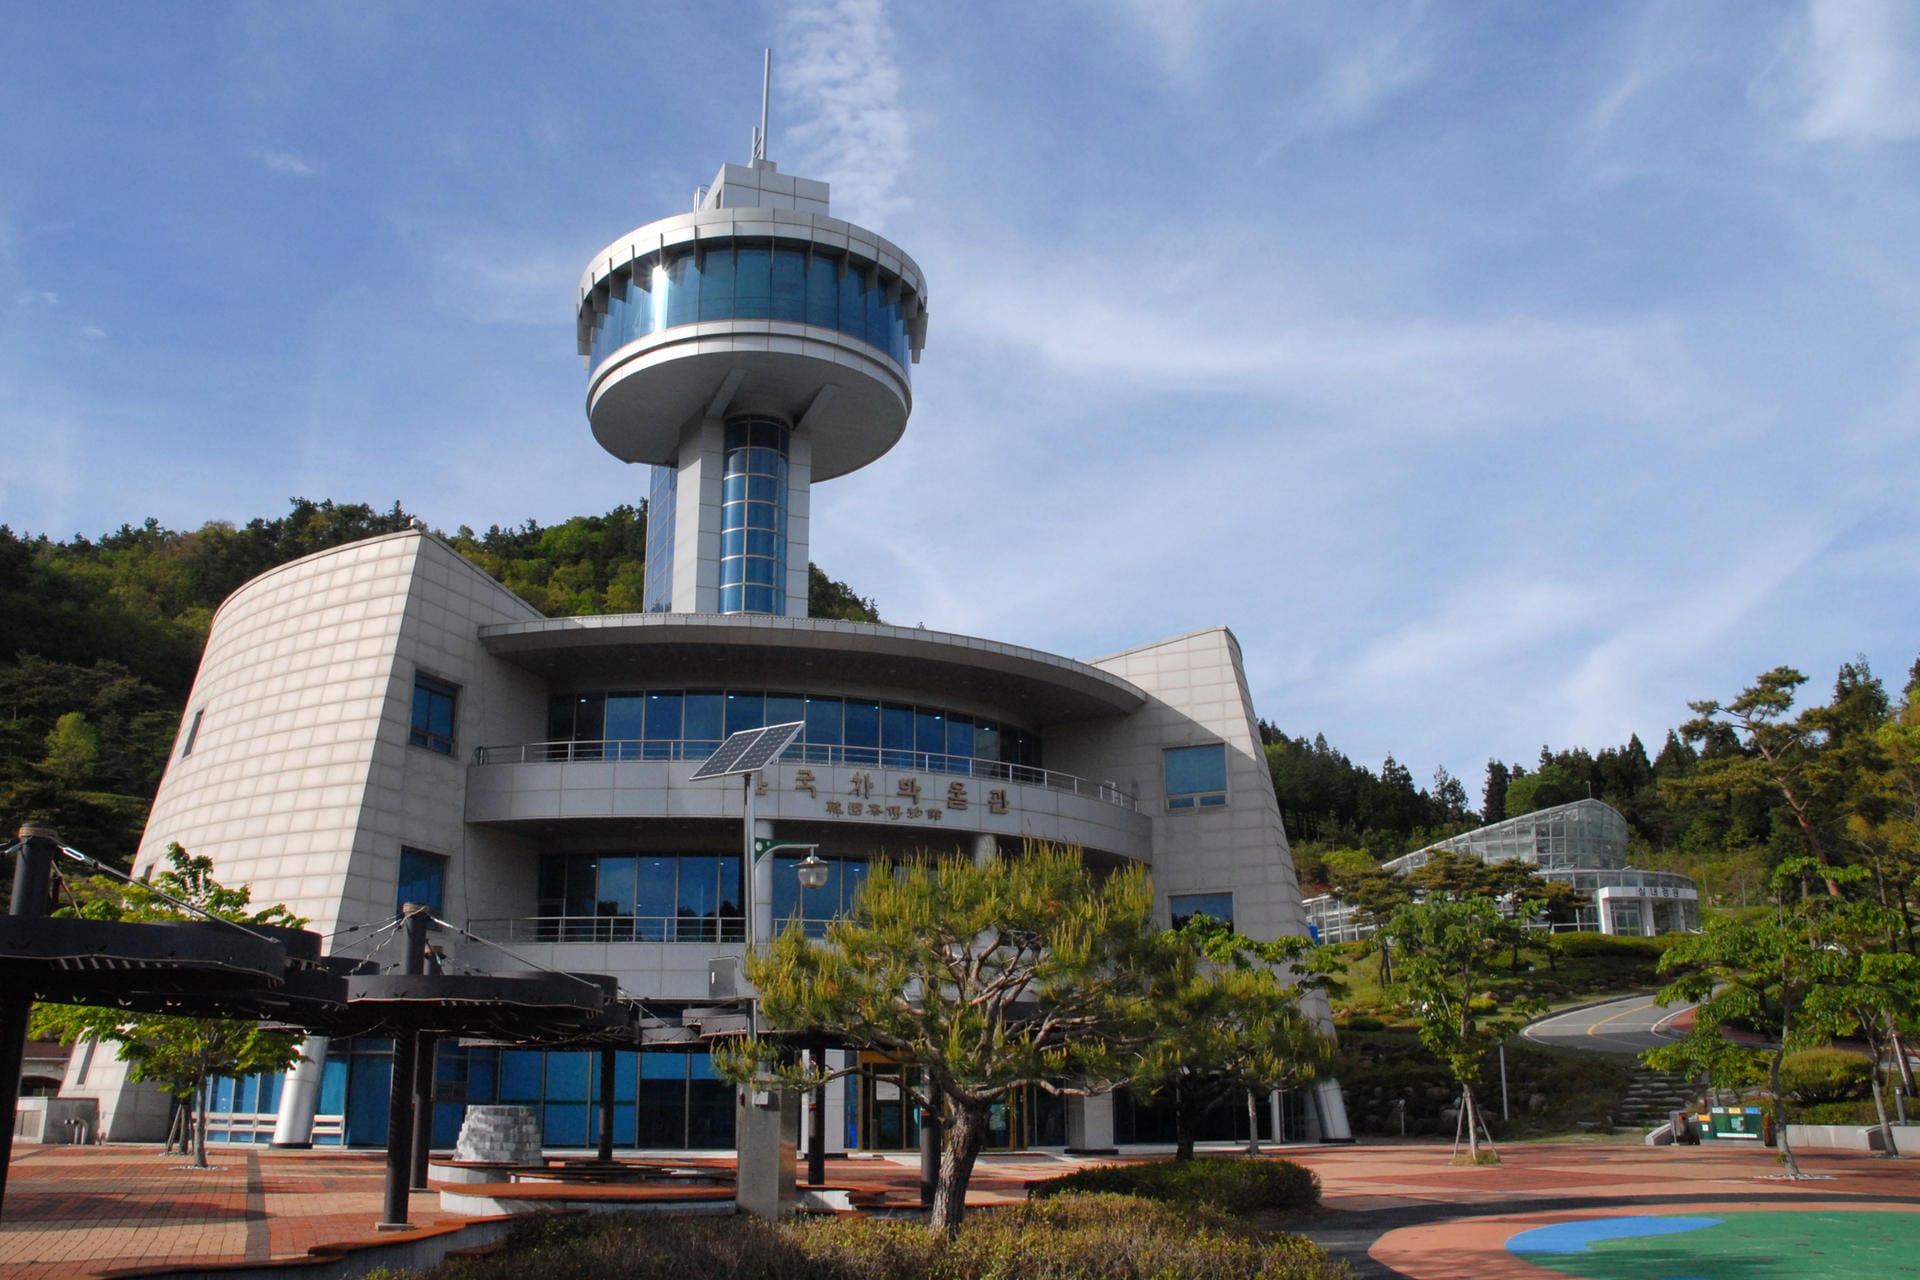 Eigenwillige Architektur: Das Tea Museum of Korea in der Nähe von Boseong.